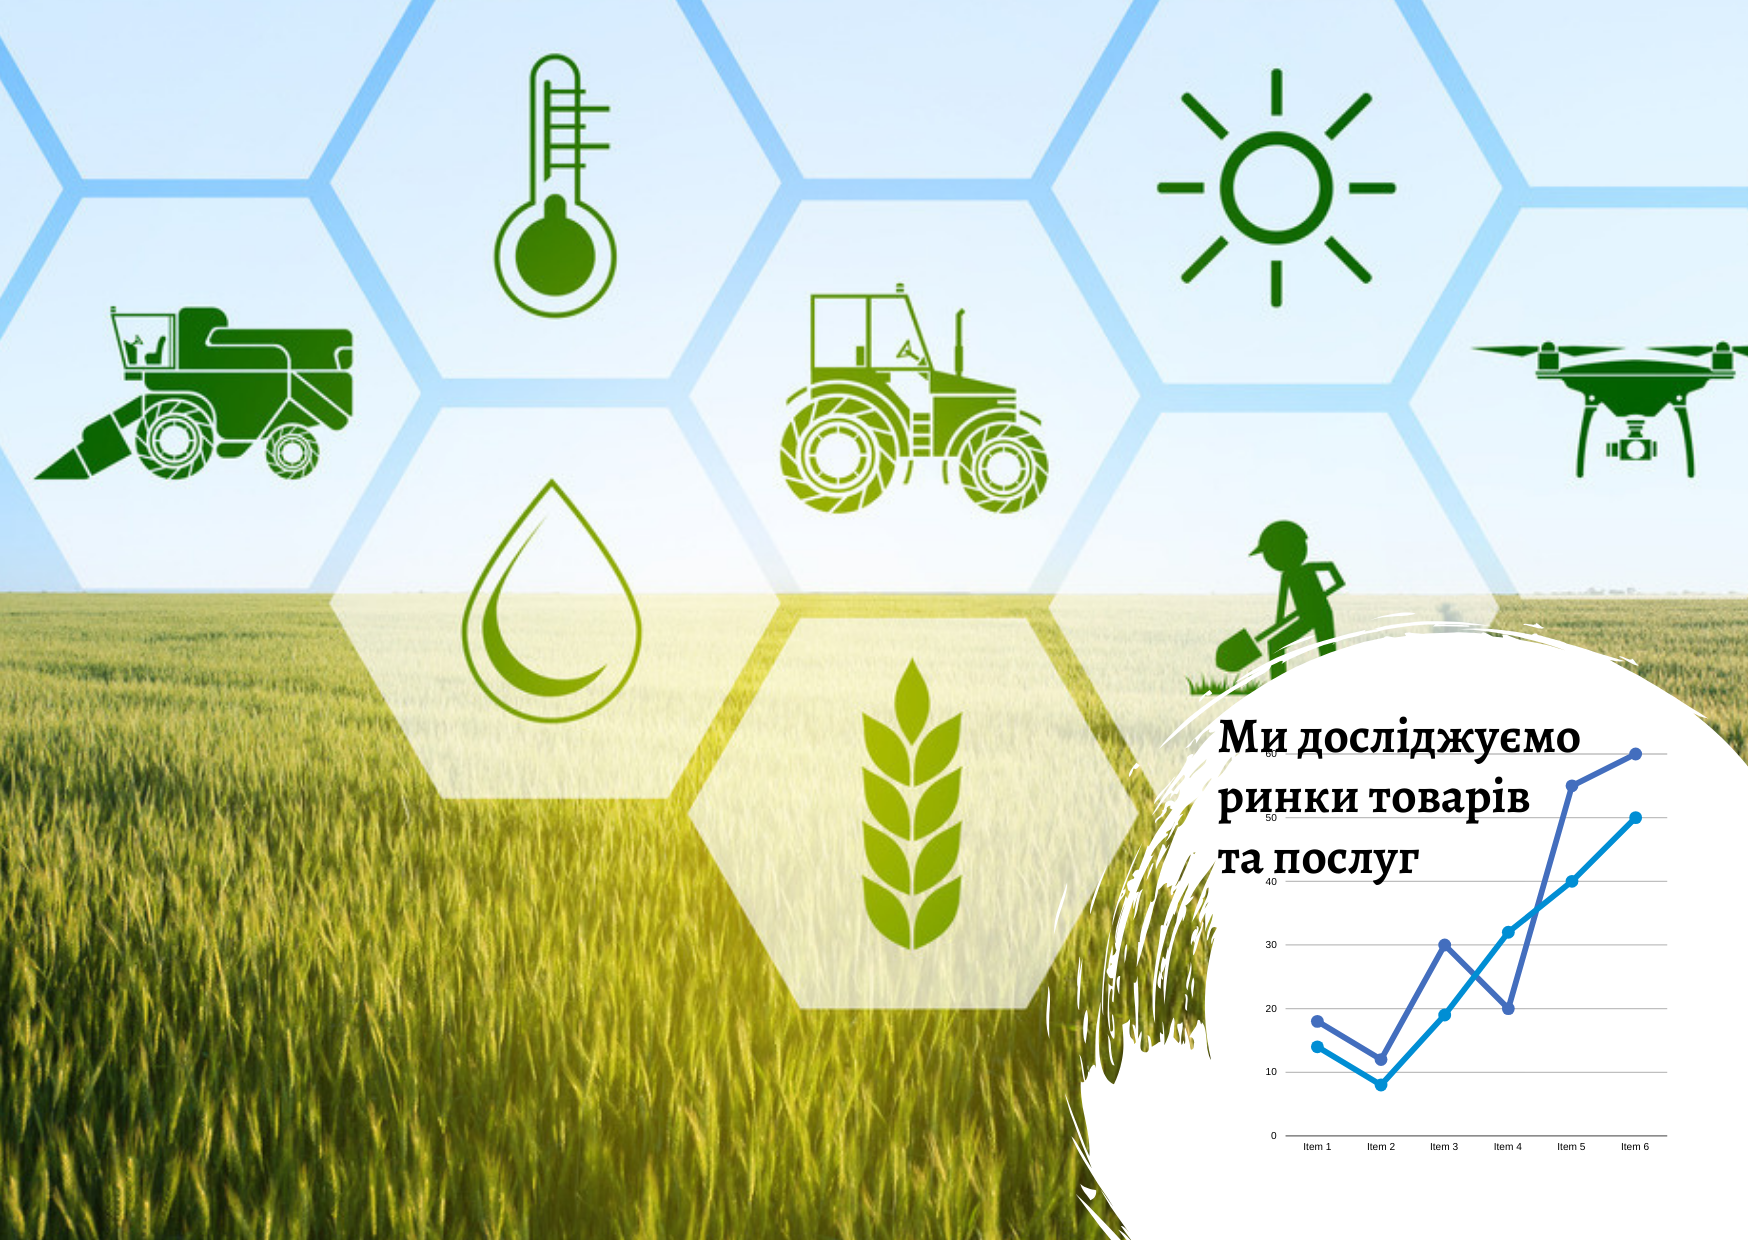 Рынок сельхоз маркетплейсов в Украине: рекомендации для новых игроков